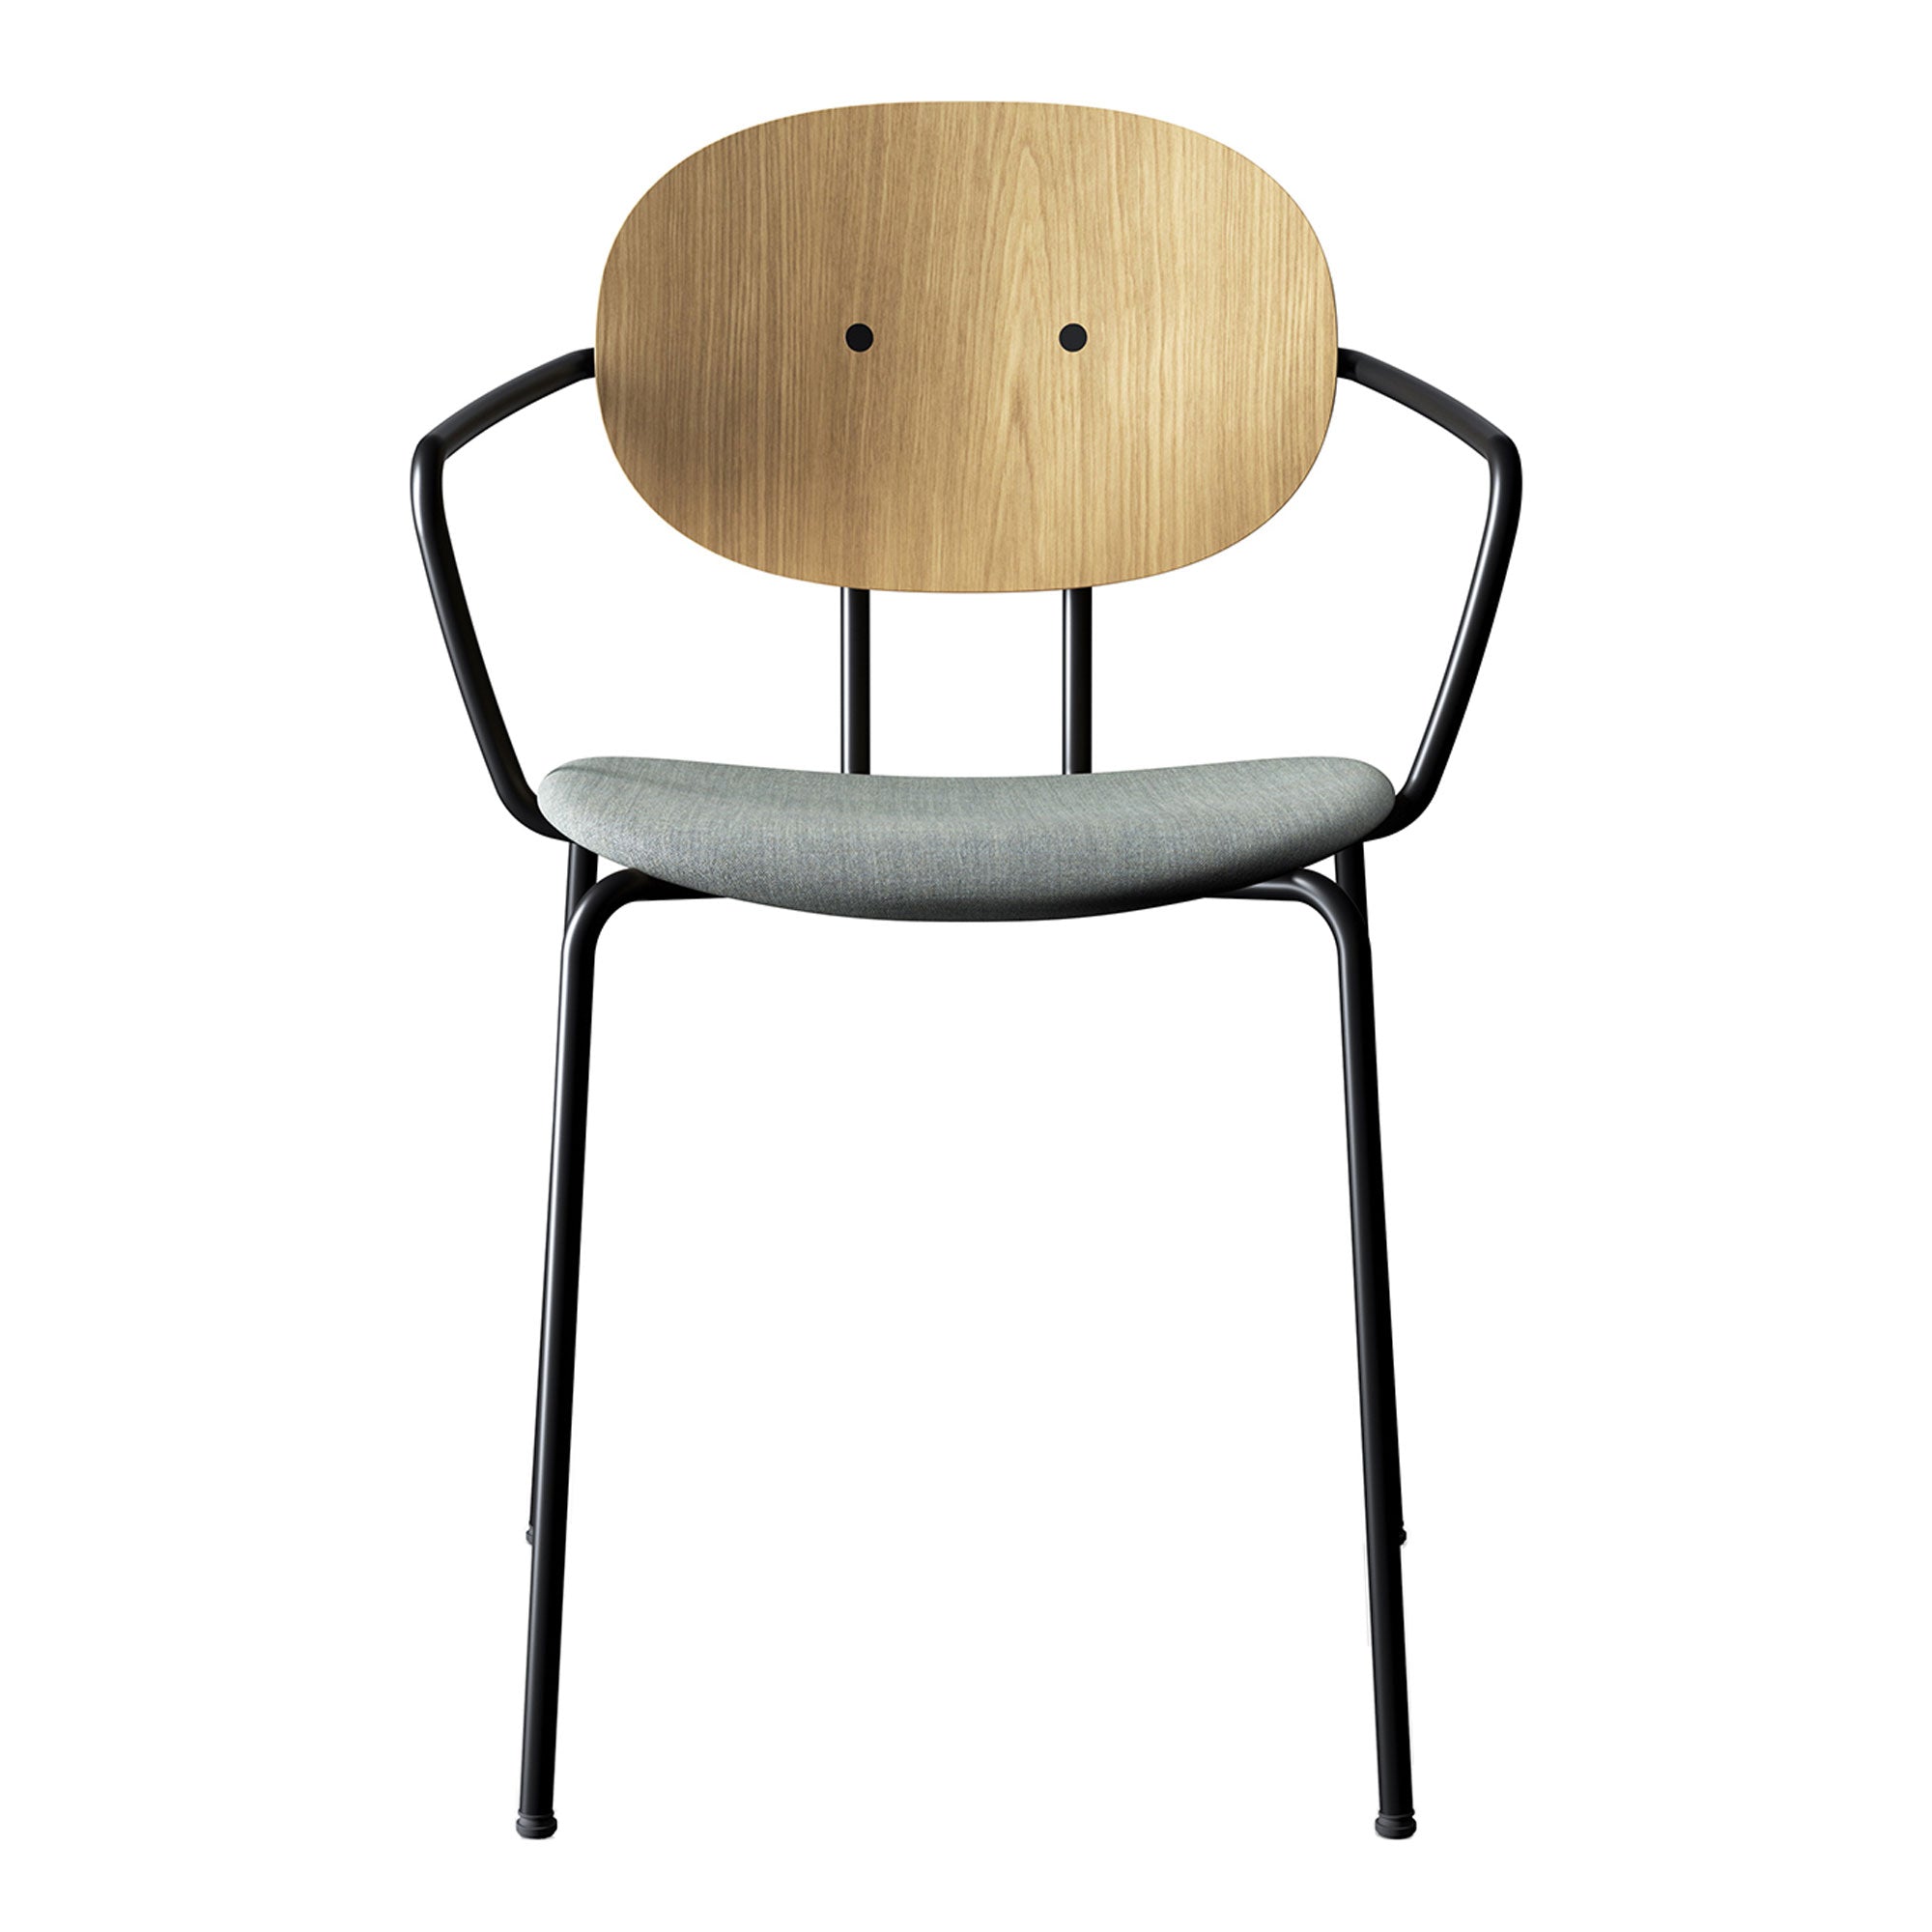 Sibast Piet Hein Chair w/ Armrest - Upholstered by Piet Hein | Public